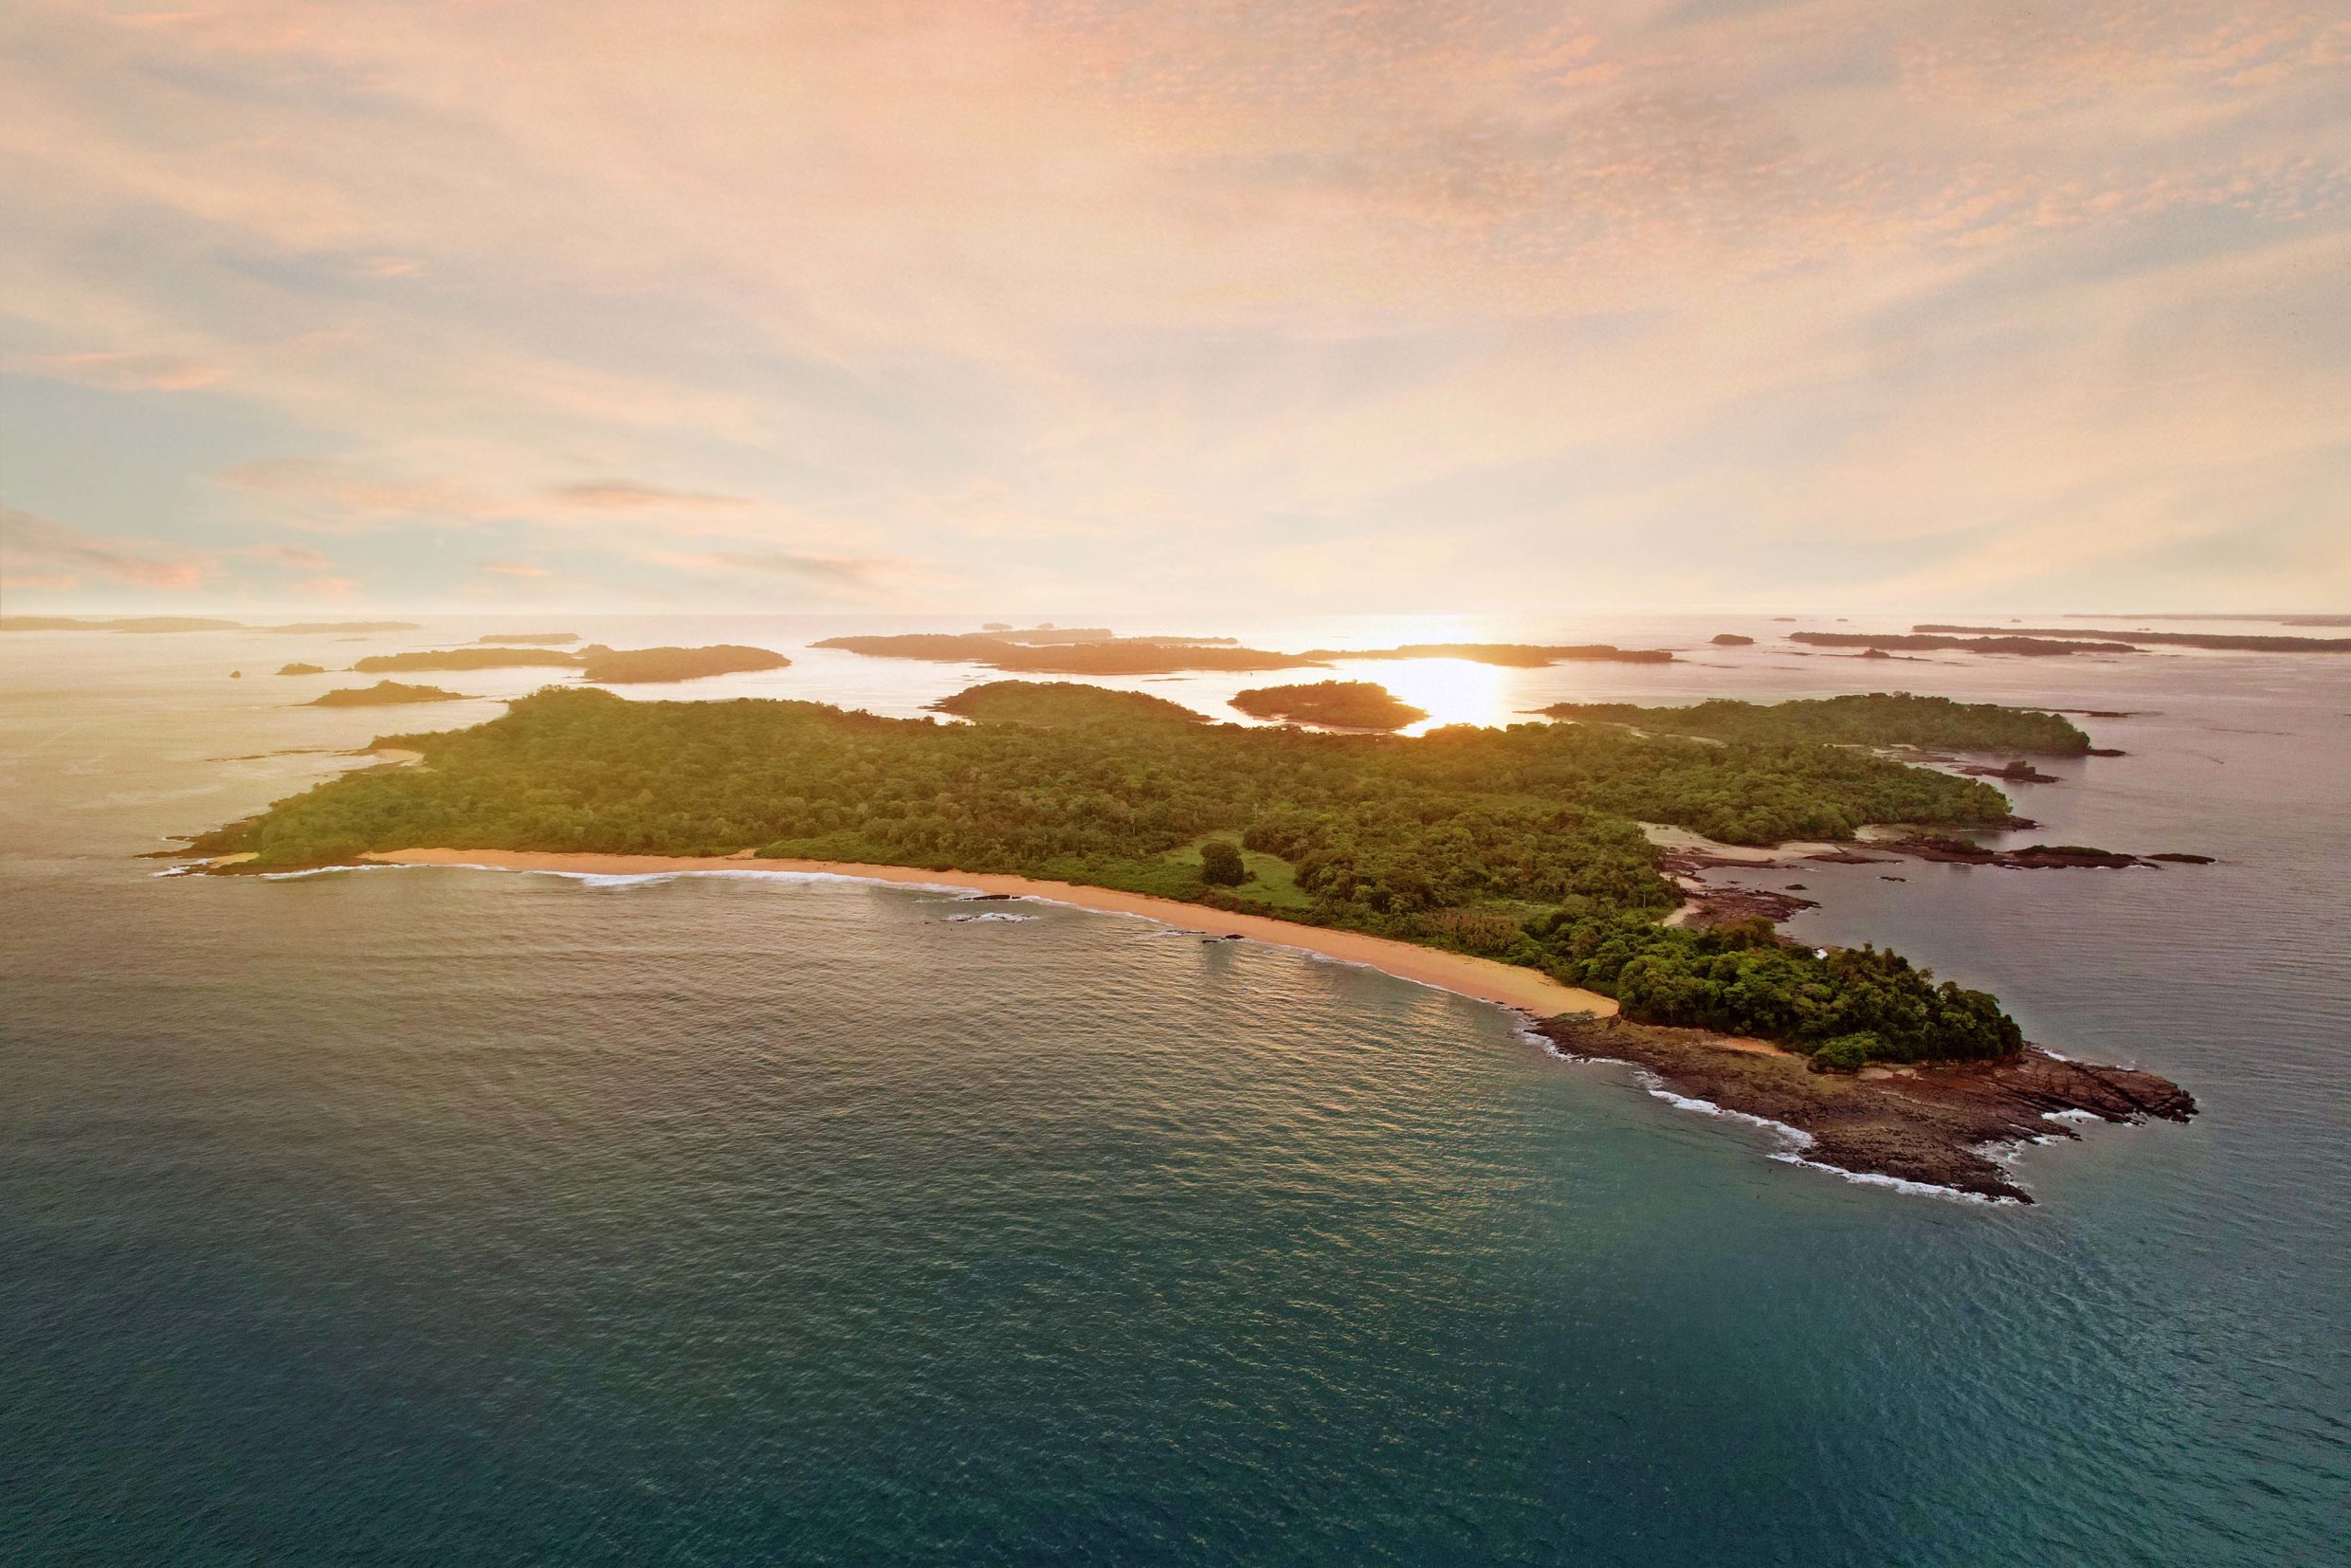 Islas Cayonetas, Panama